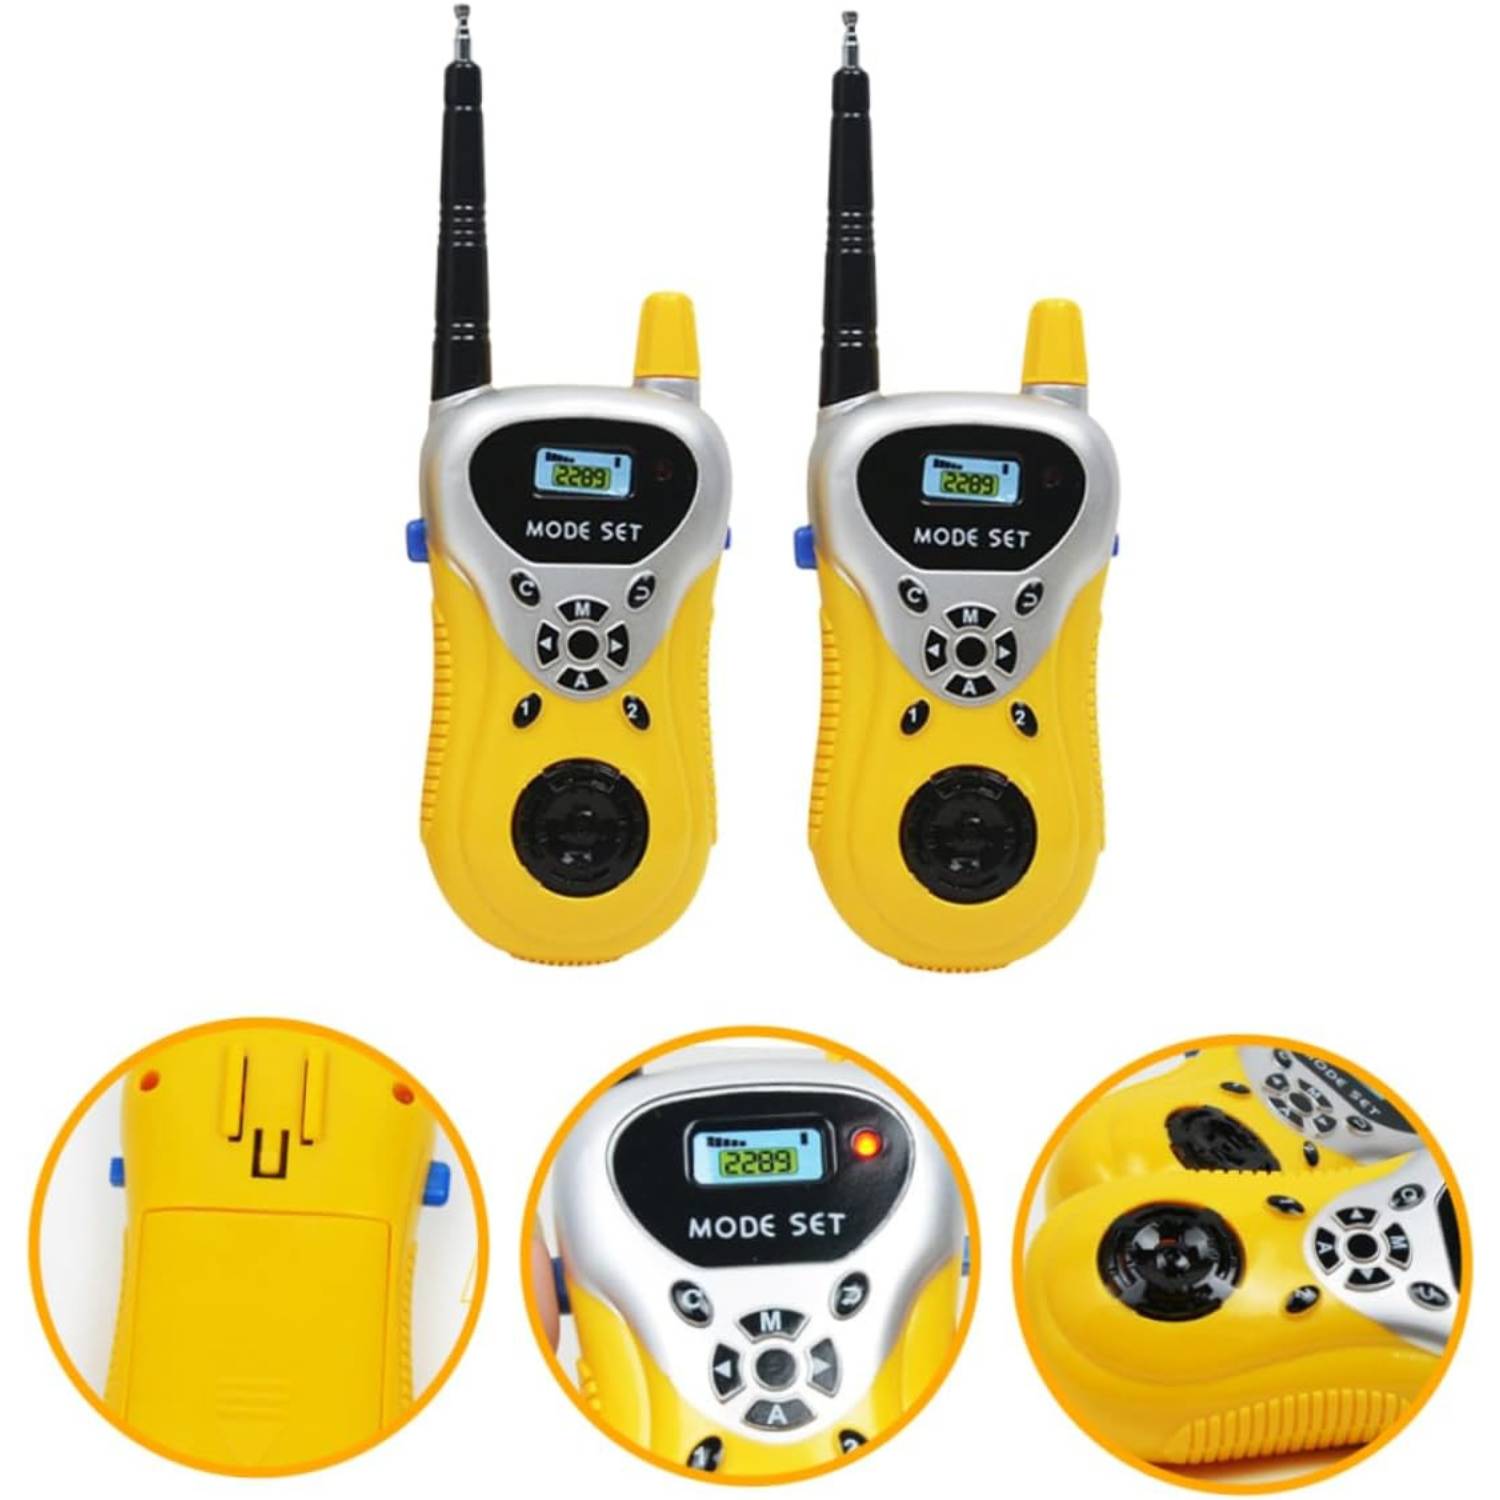 buy kids walkie talkies